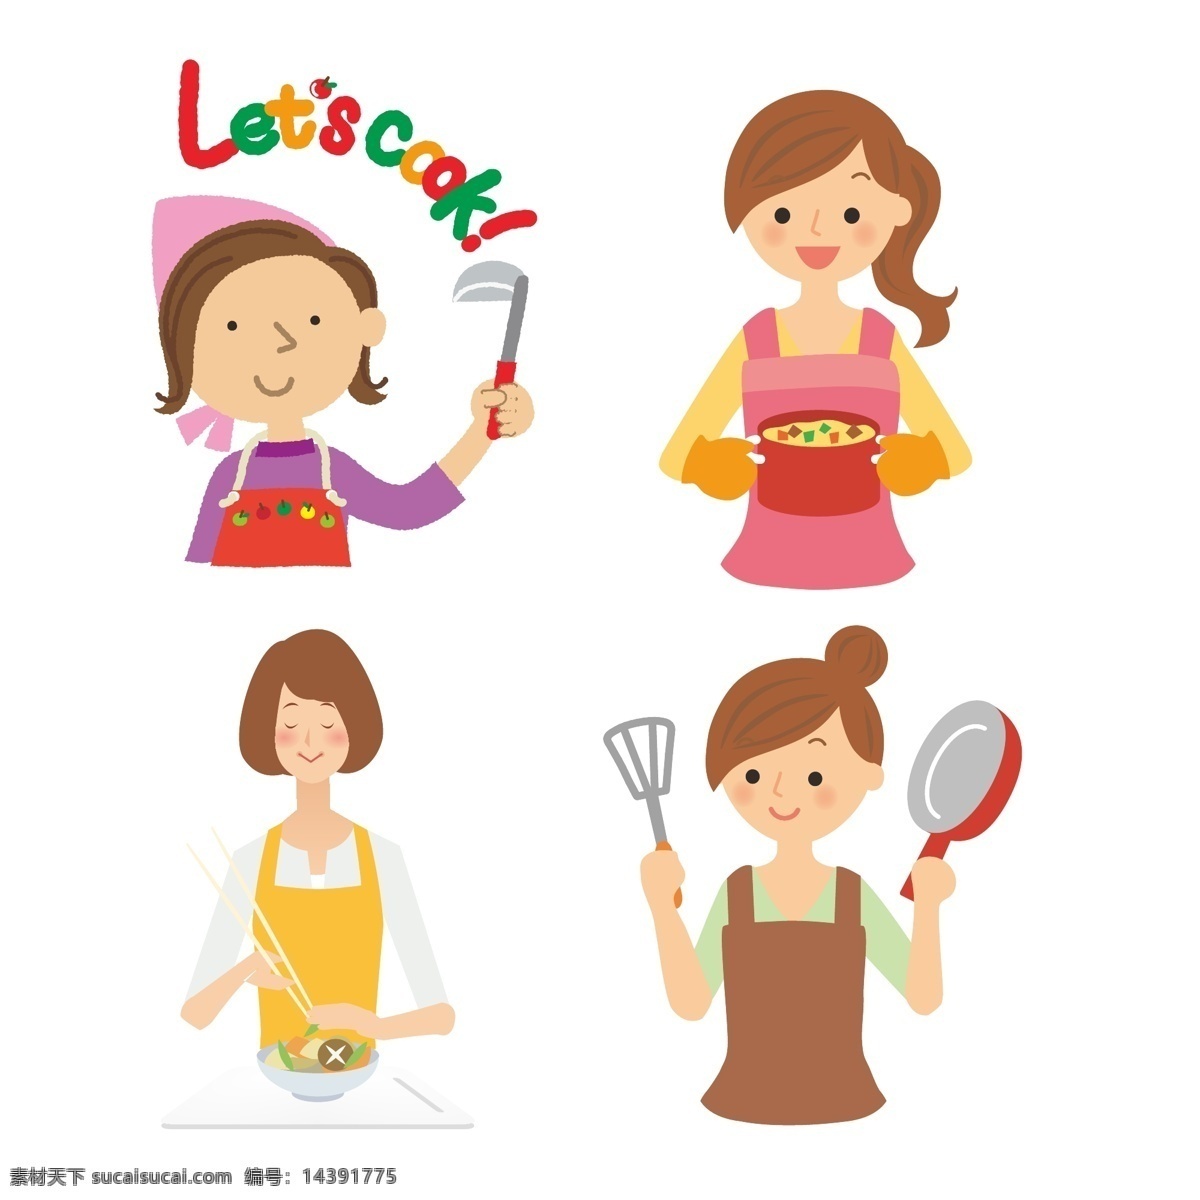 家庭主妇图片 家庭 主妇 烹饪 做菜 平底锅 上菜 动漫卡通插图 动漫动画